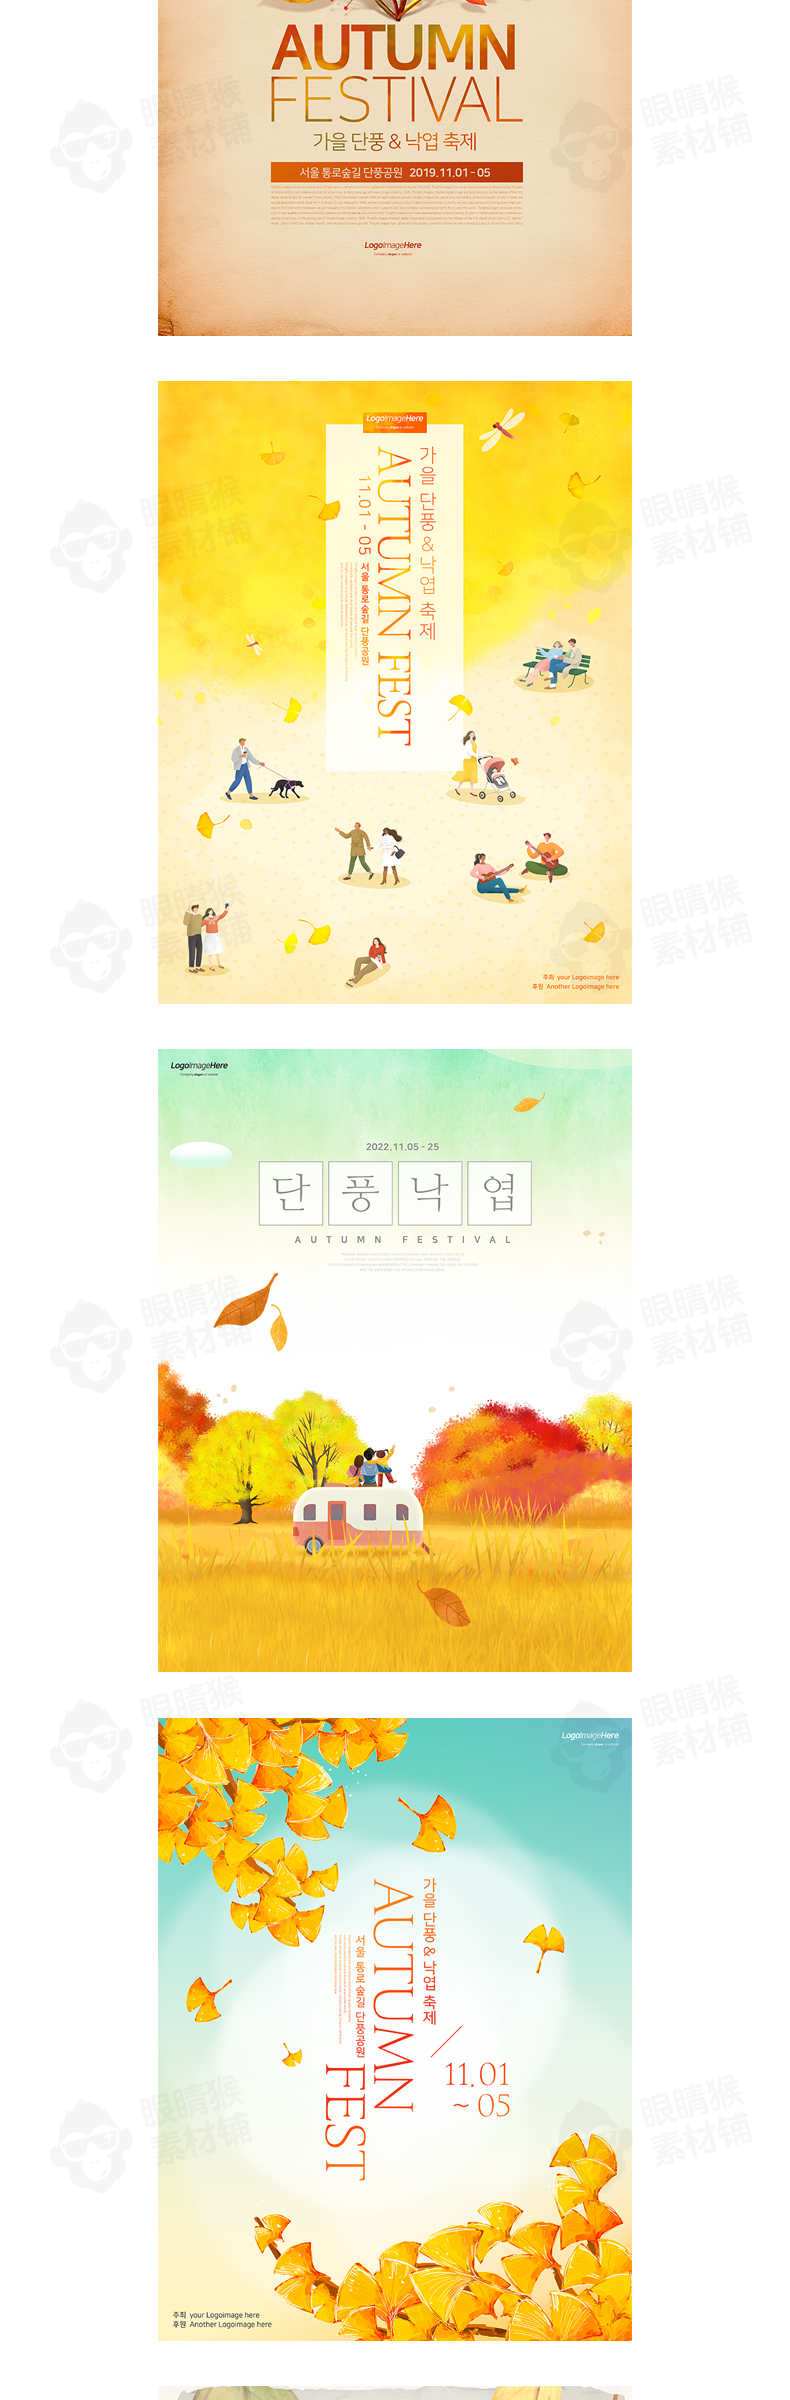 创意外景韩国时尚秋季风格秋天网页广告促销海报PSD设计素材模板插图3